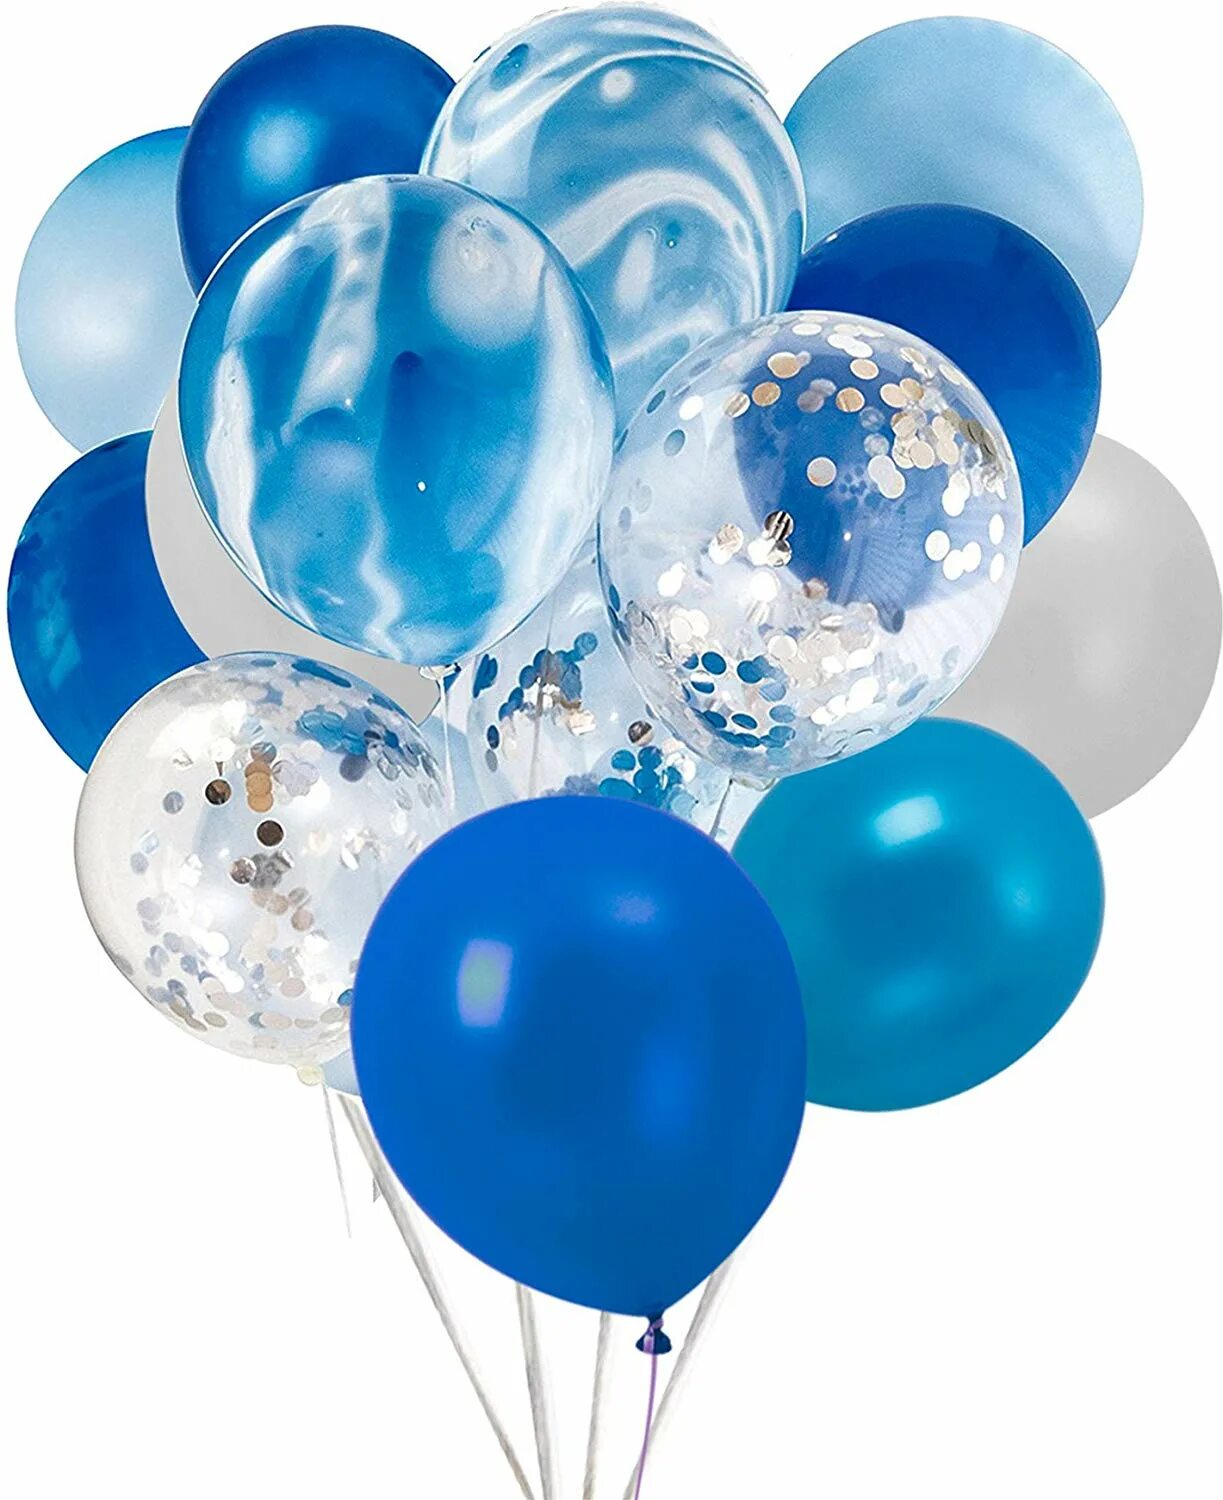 Сине белые шары. Синие шары. Синие шары воздушные. Синий шарик.